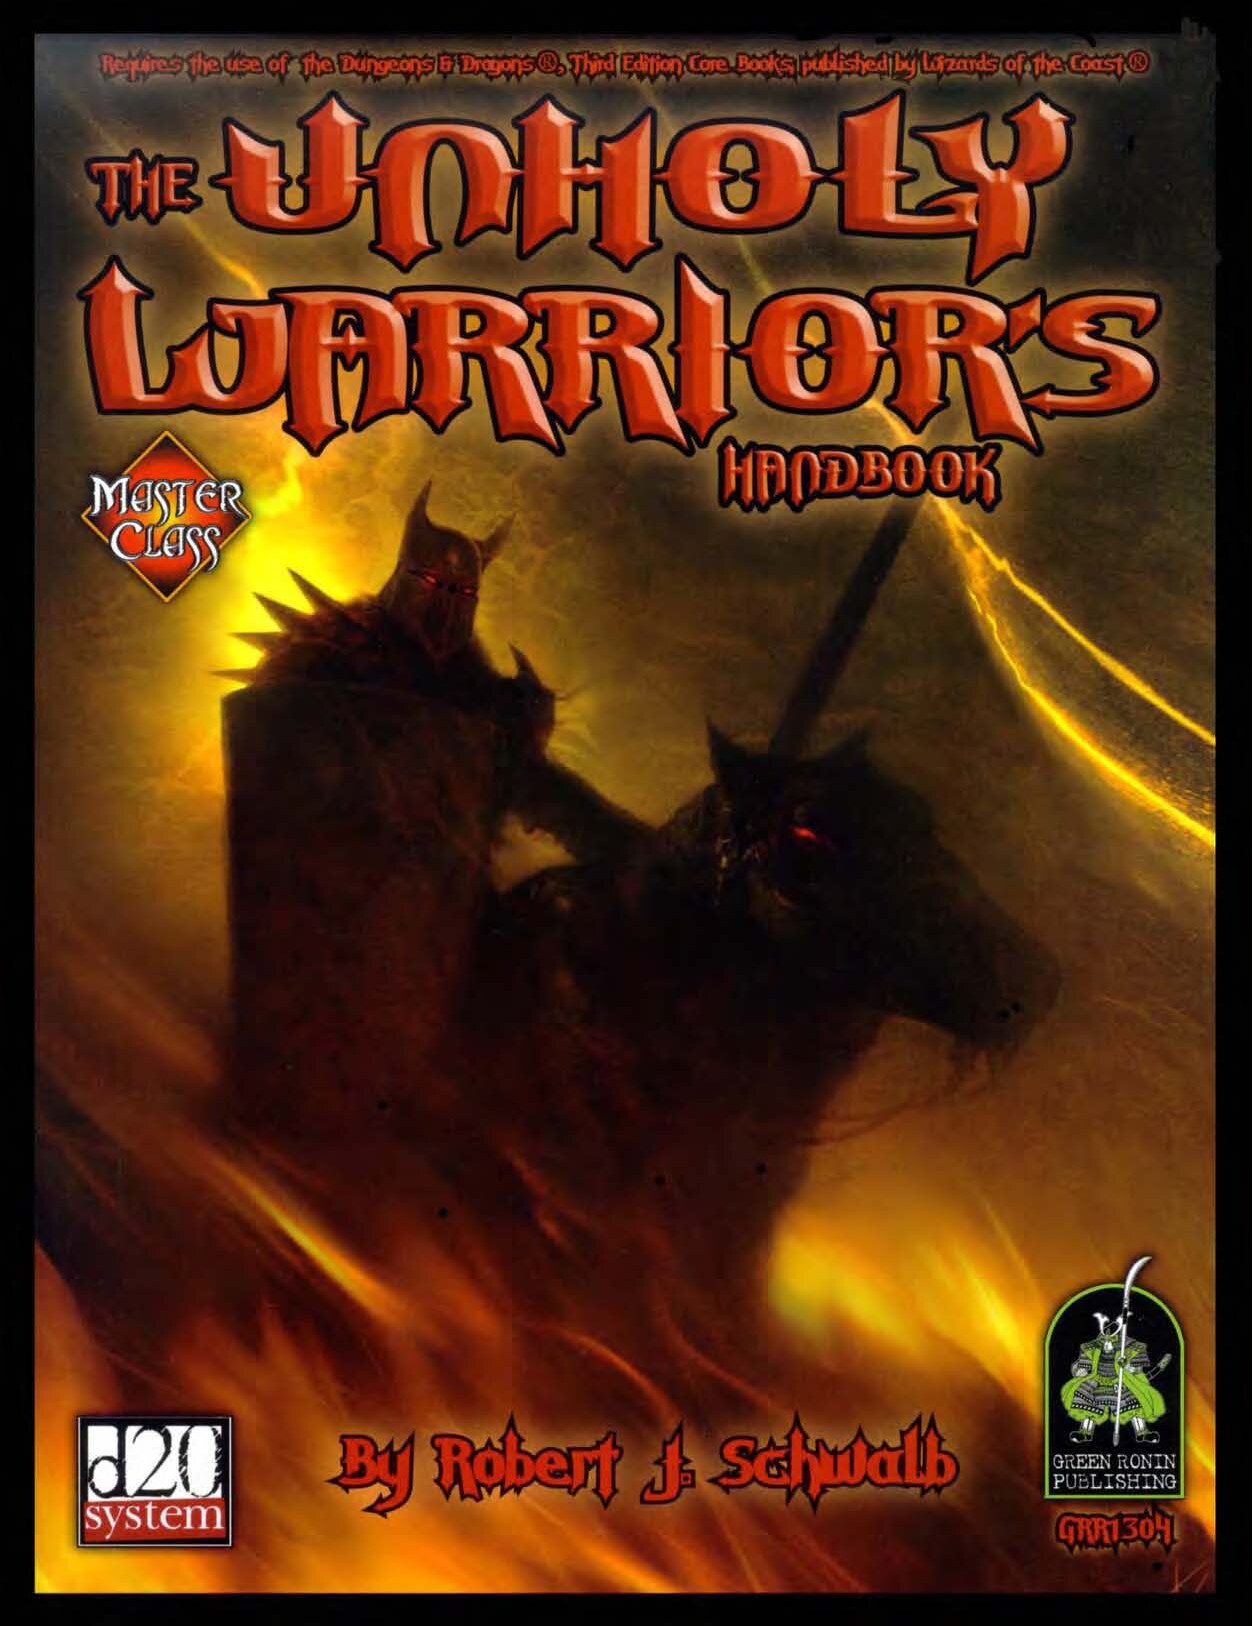 The Unholy Warrior's Handbook